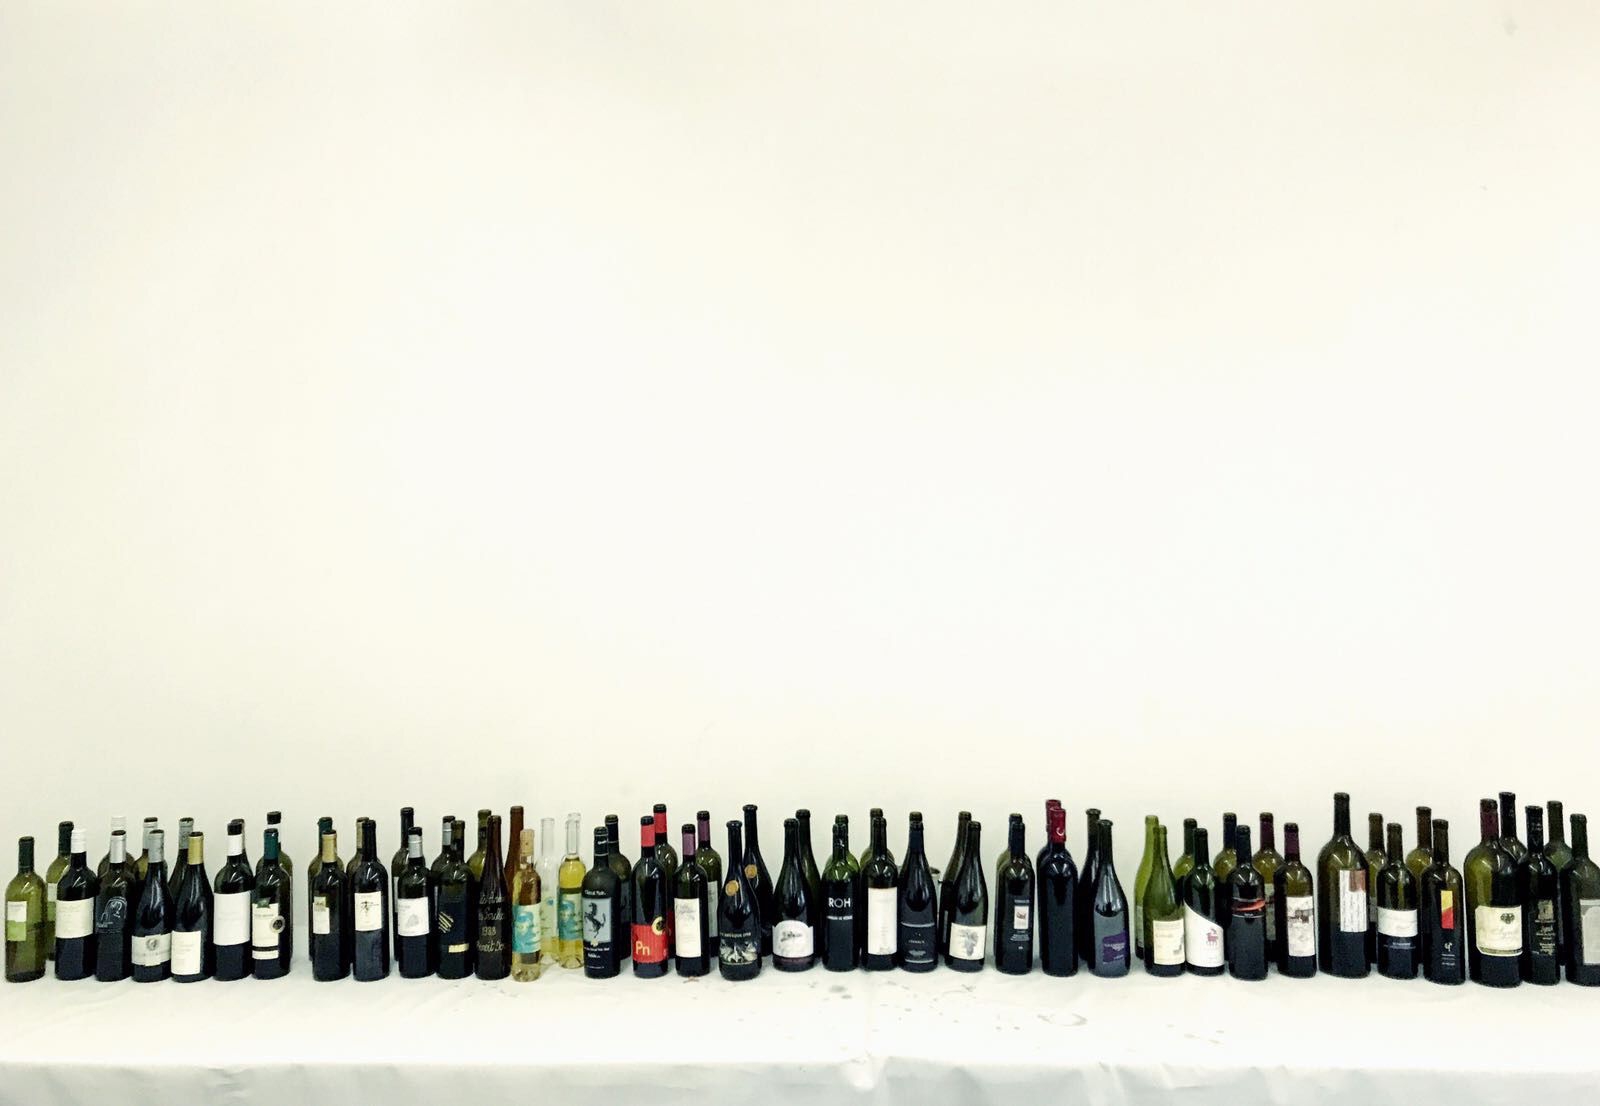 Trente-quatre des meilleures caves du Valais ont sélectionné un seul vin pour prouver à une trentaine de spécialistes la qualité de nos crus.